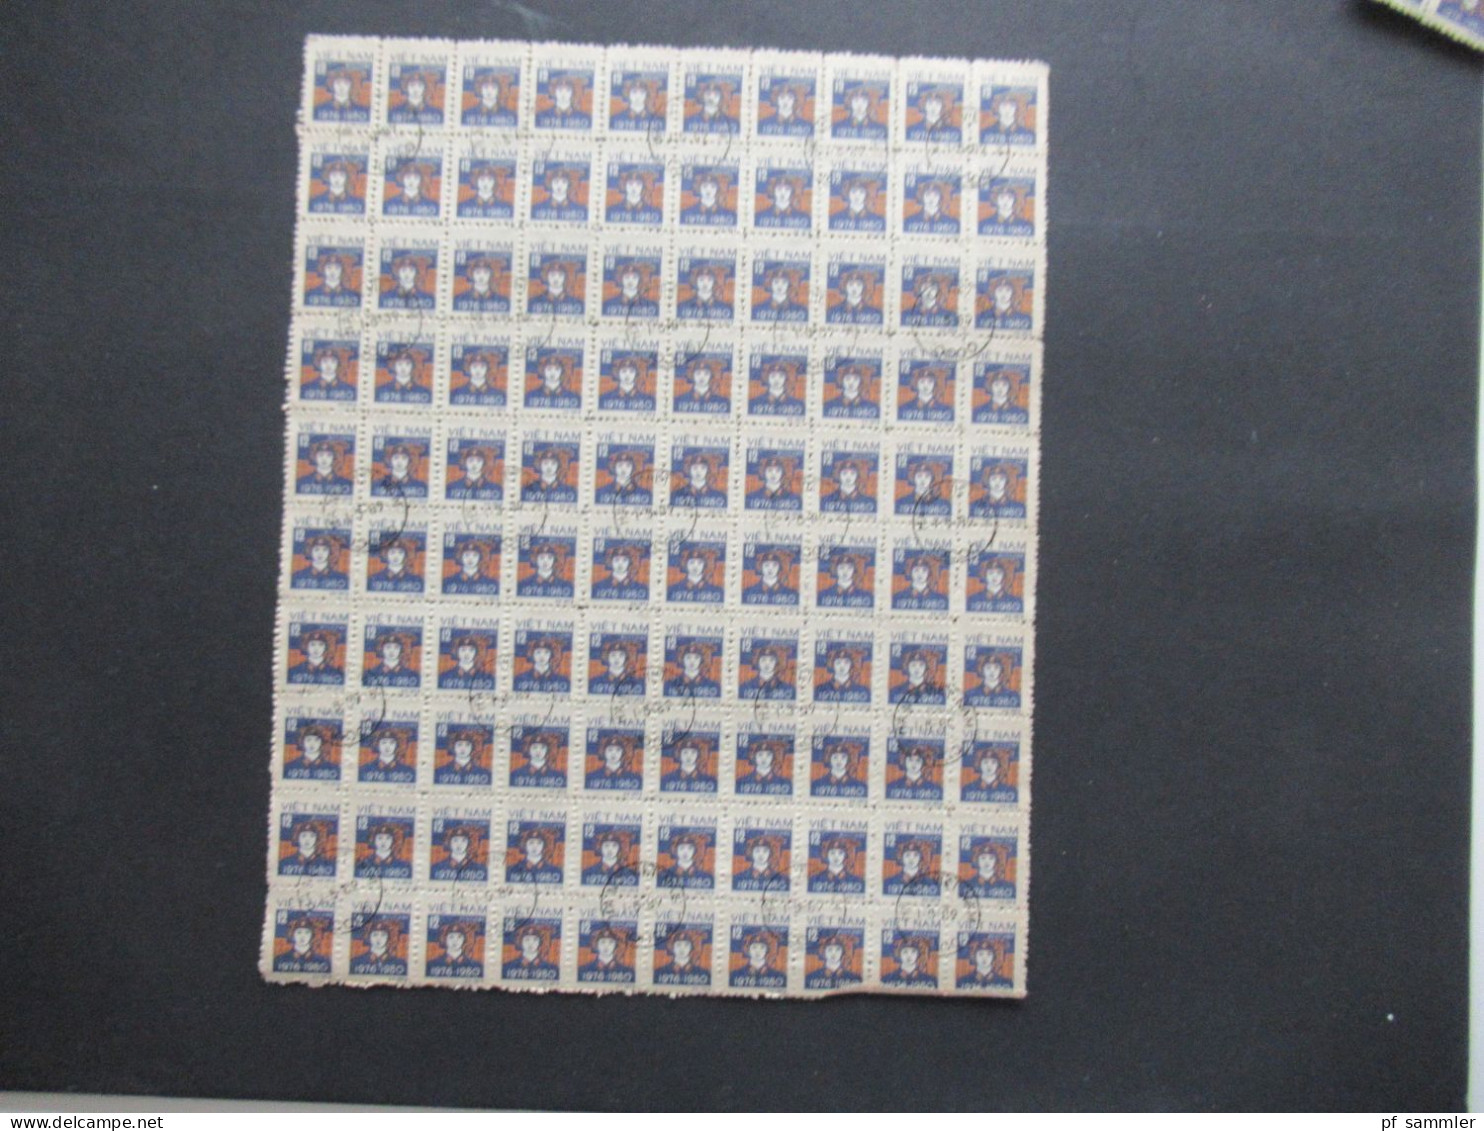 Asien Vietnam 1978 / 1980 Freimarken Motiv Soldat Buu Chinh 100er Bogenteile / Bogen (11 Stück) Mit Stempel Hanoi - Vietnam